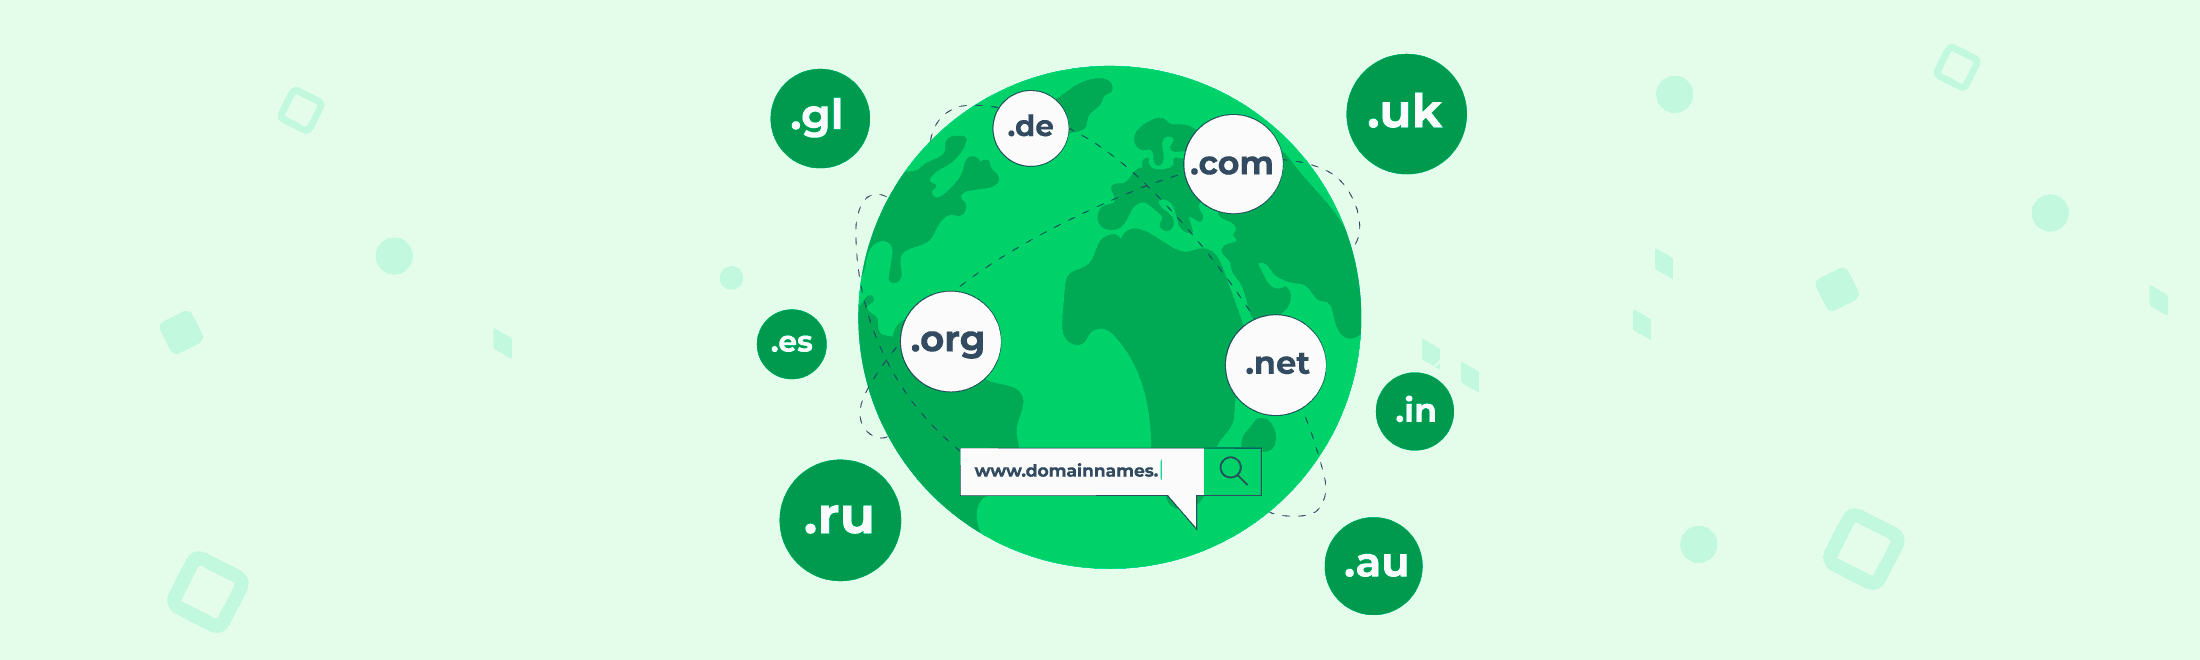 Як вибрати доменне ім'я для сайту? #2